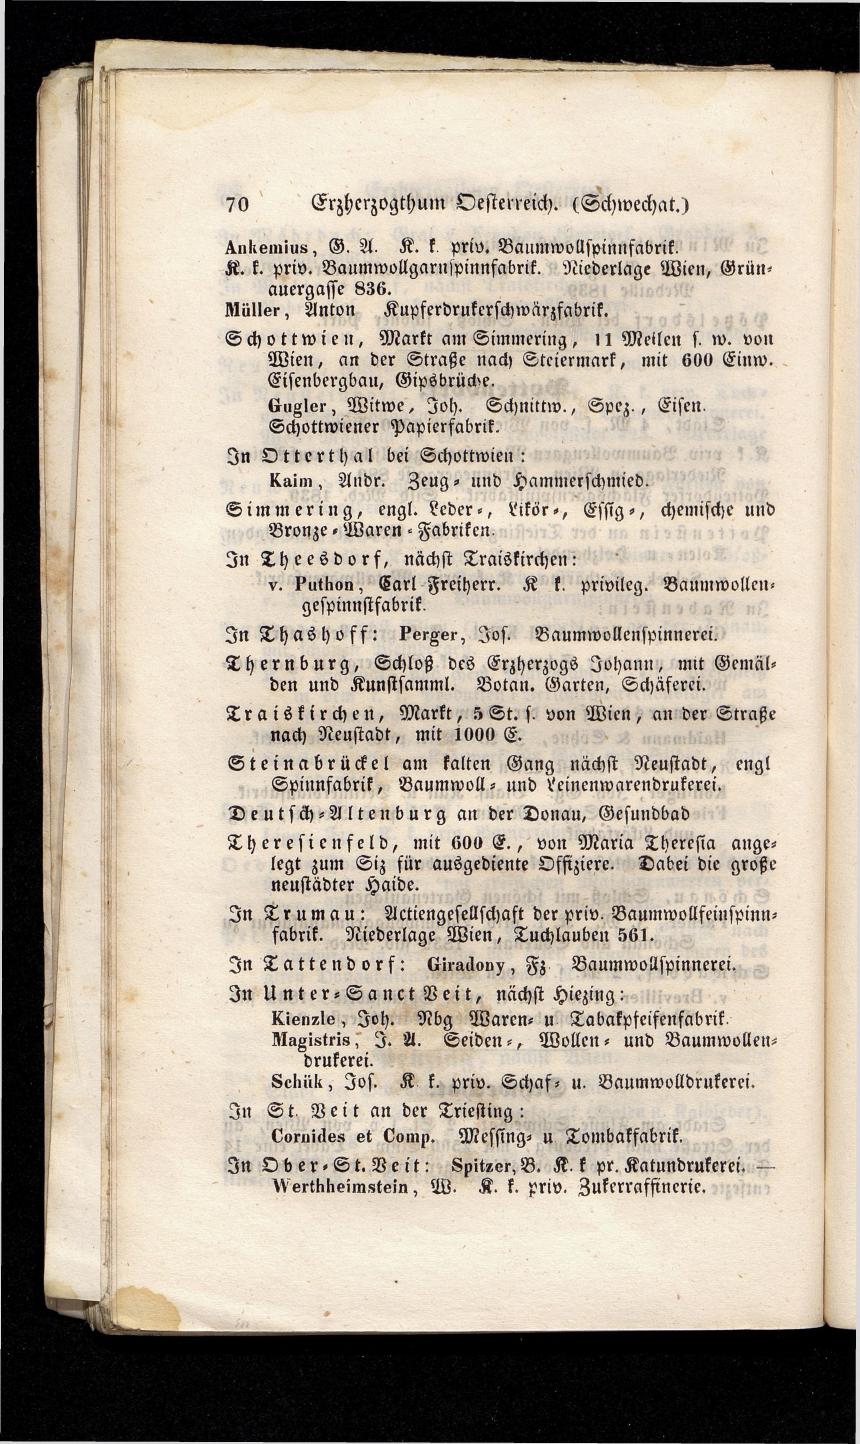 Grosses Adressbuch der Kaufleute. No. 13. Oesterreich ober u. unter der Enns 1844 - Seite 74